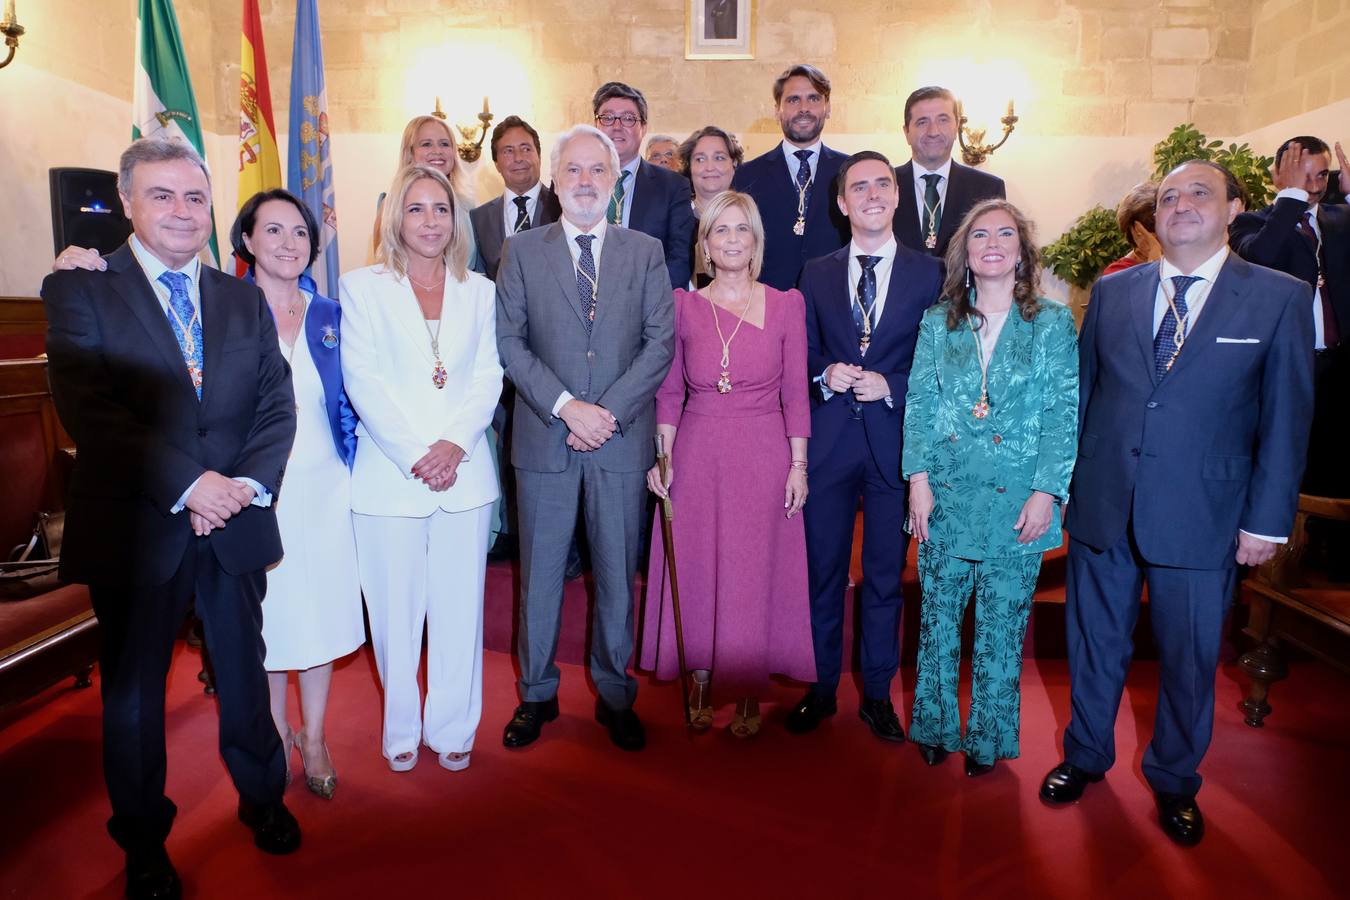 Fotos: El pleno de investidura de María José García Pelayo en Jerez